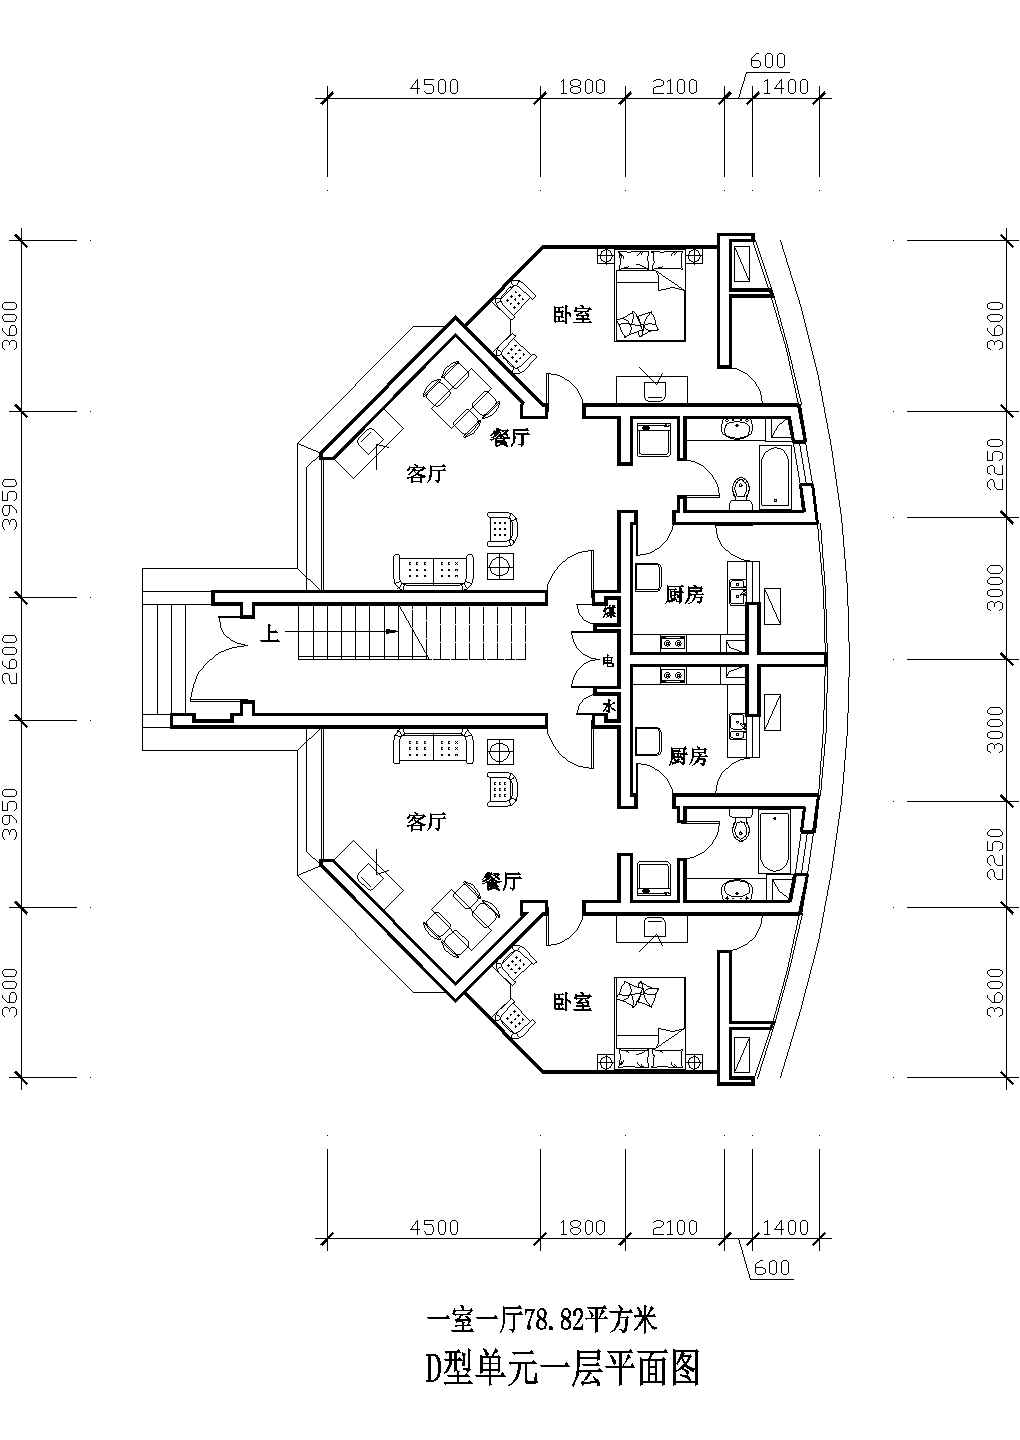 78平方米D单元多层一室一厅户型设计cad图(含效果图)